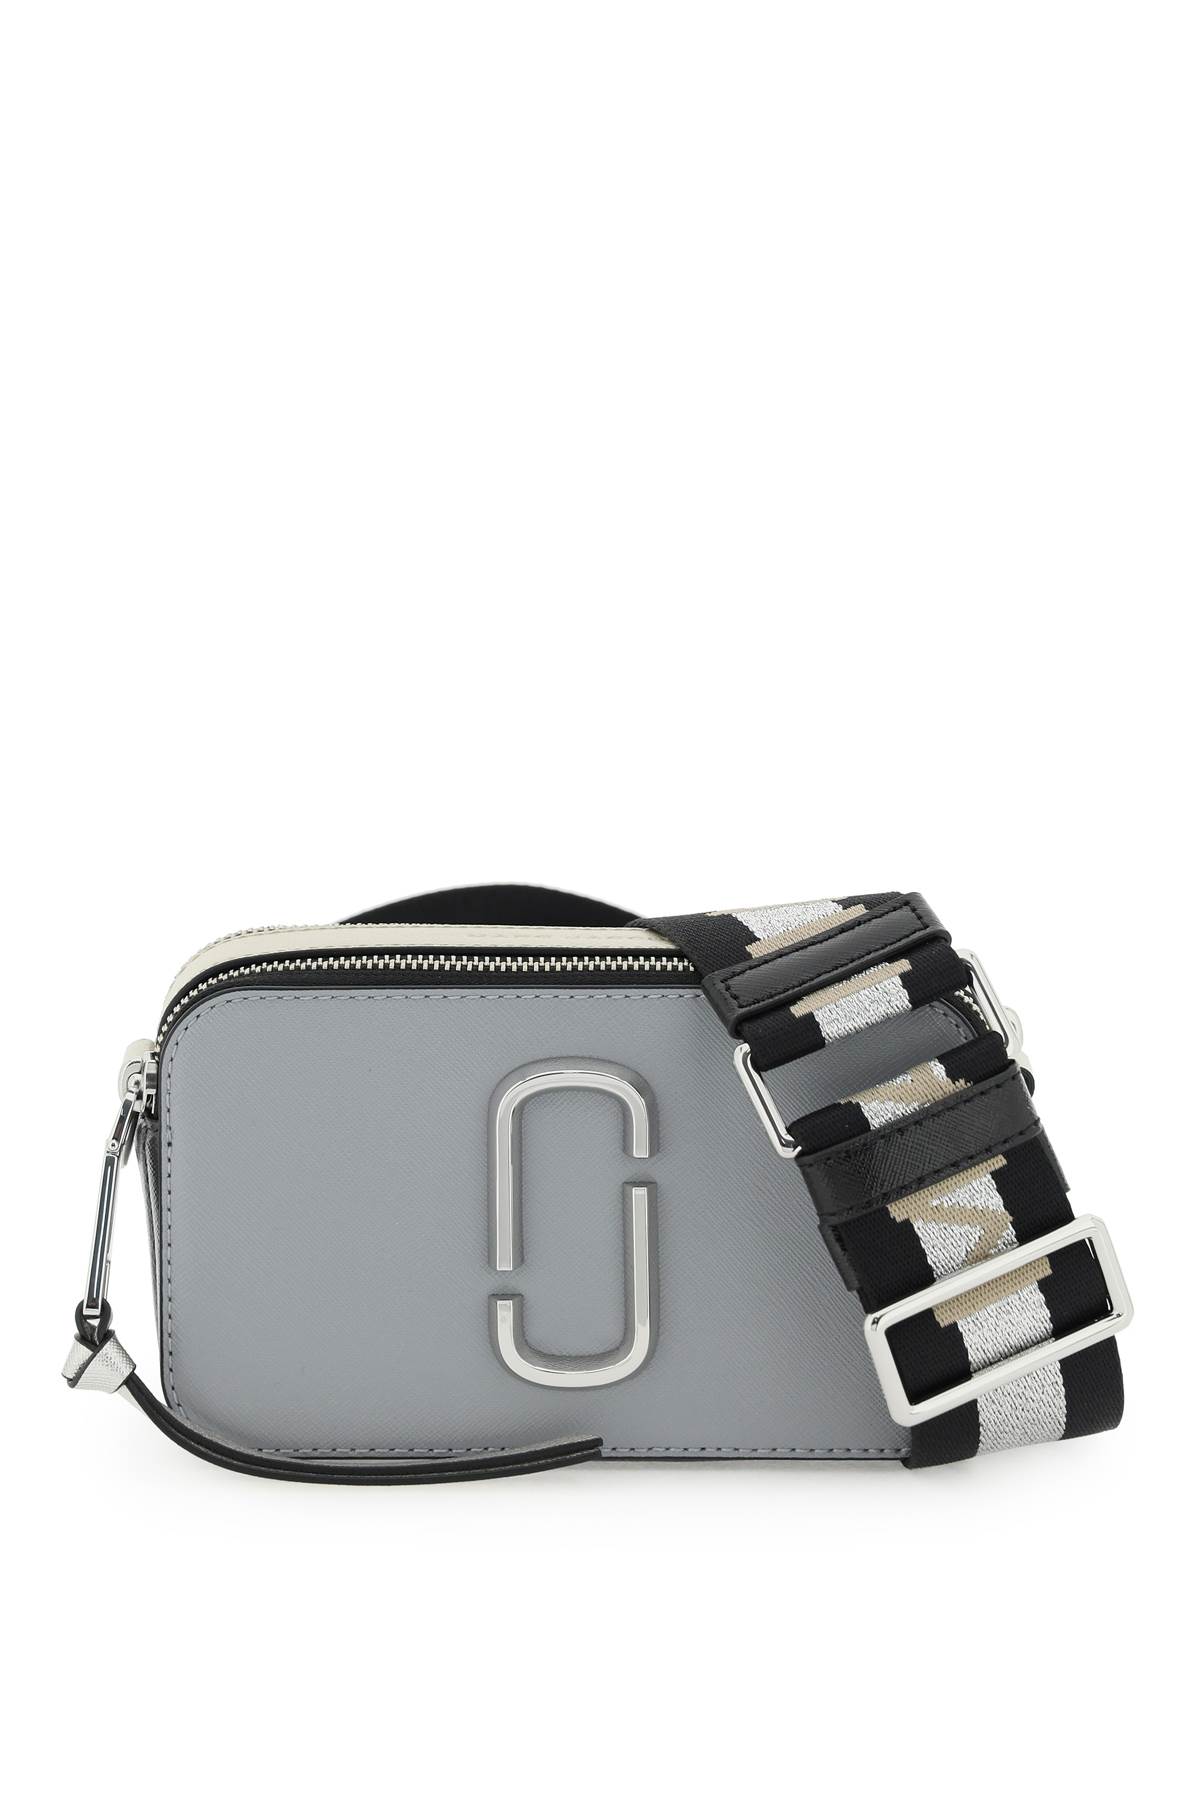 Marc Jacobs Grey small Snapshot bag